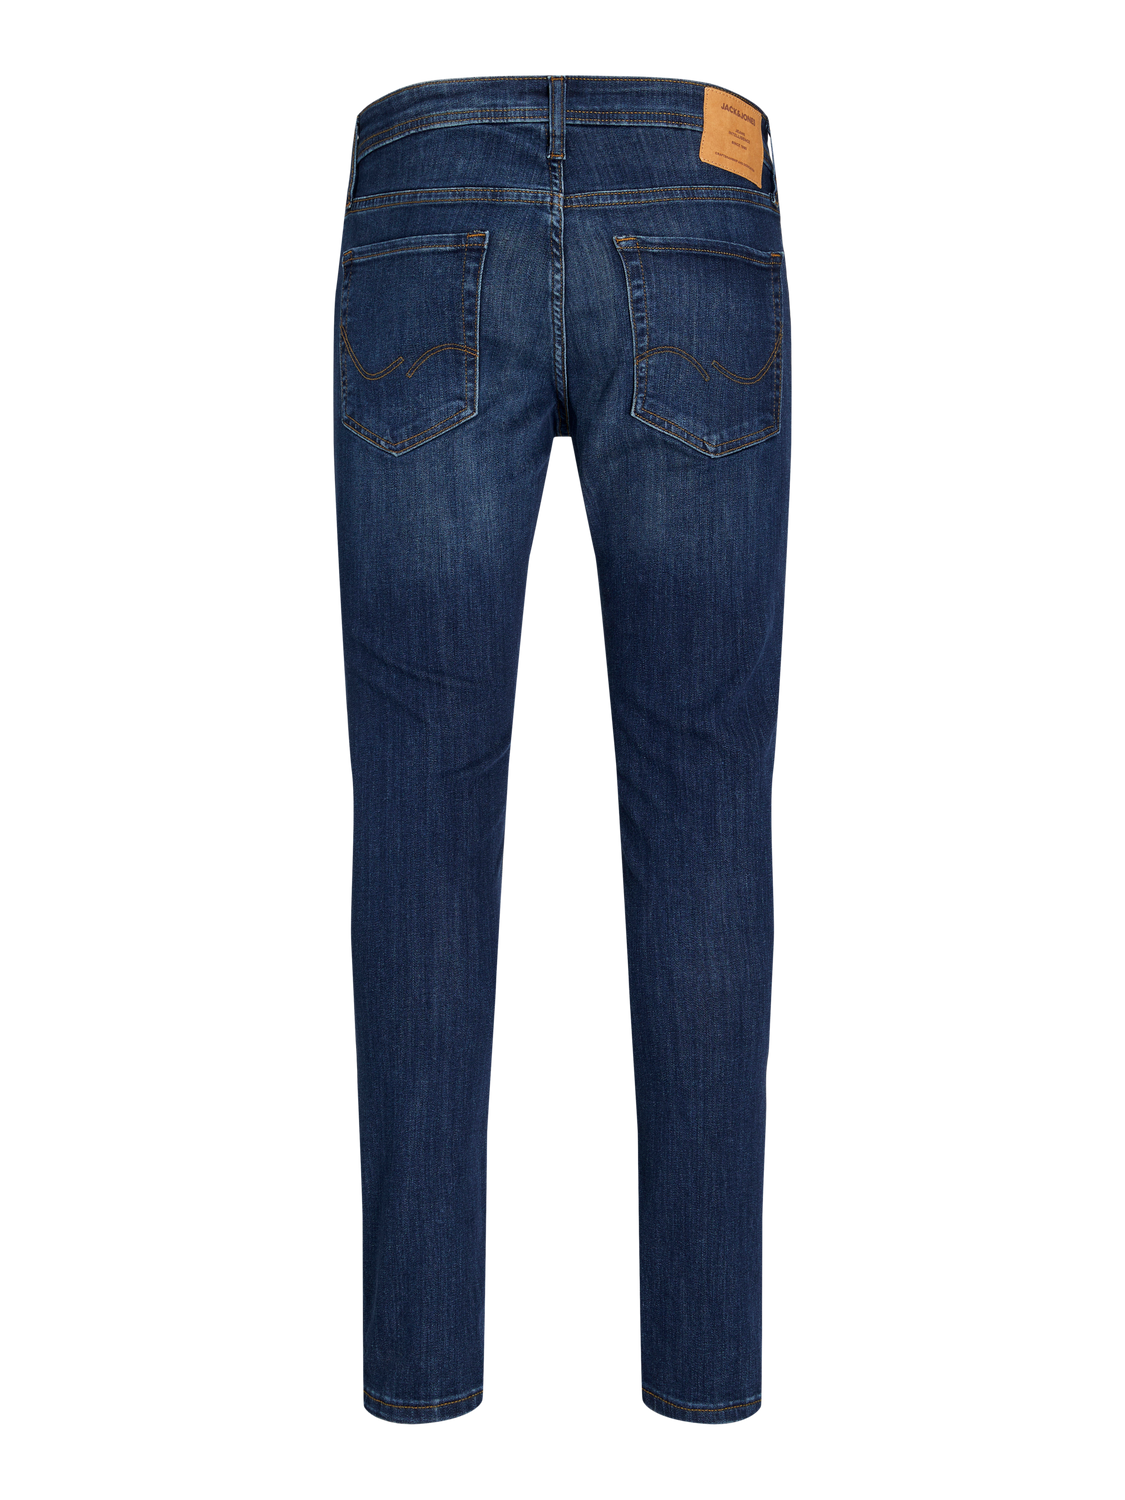 JJIGLENN JJORIGINAL AM 819 PIW Slim fit jeans